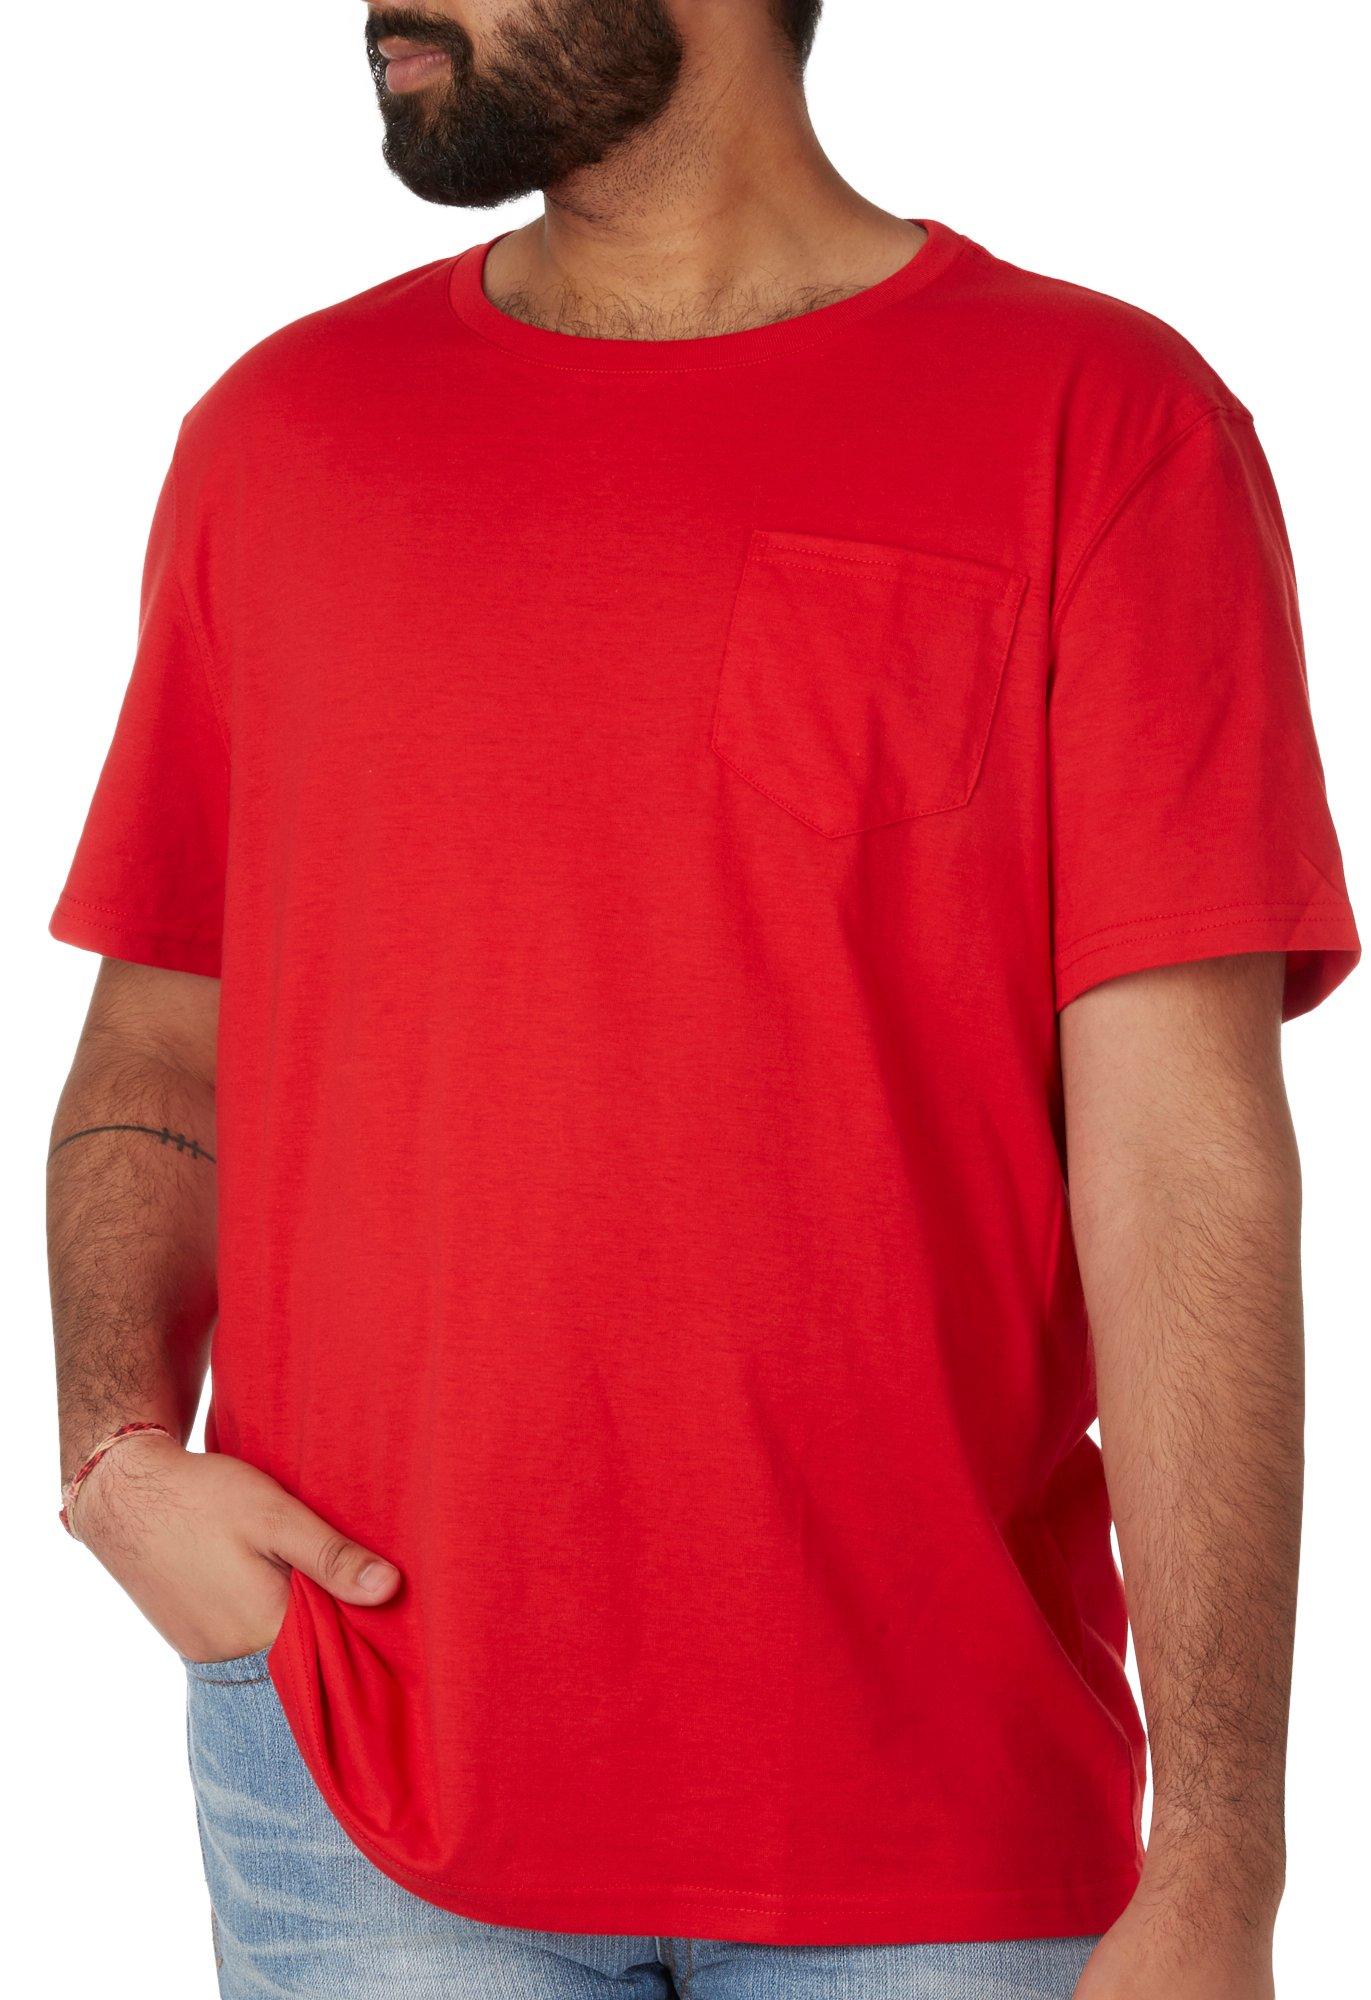 Tackle & Tides Mens Solid Short Sleeve Pocket T- Shirt